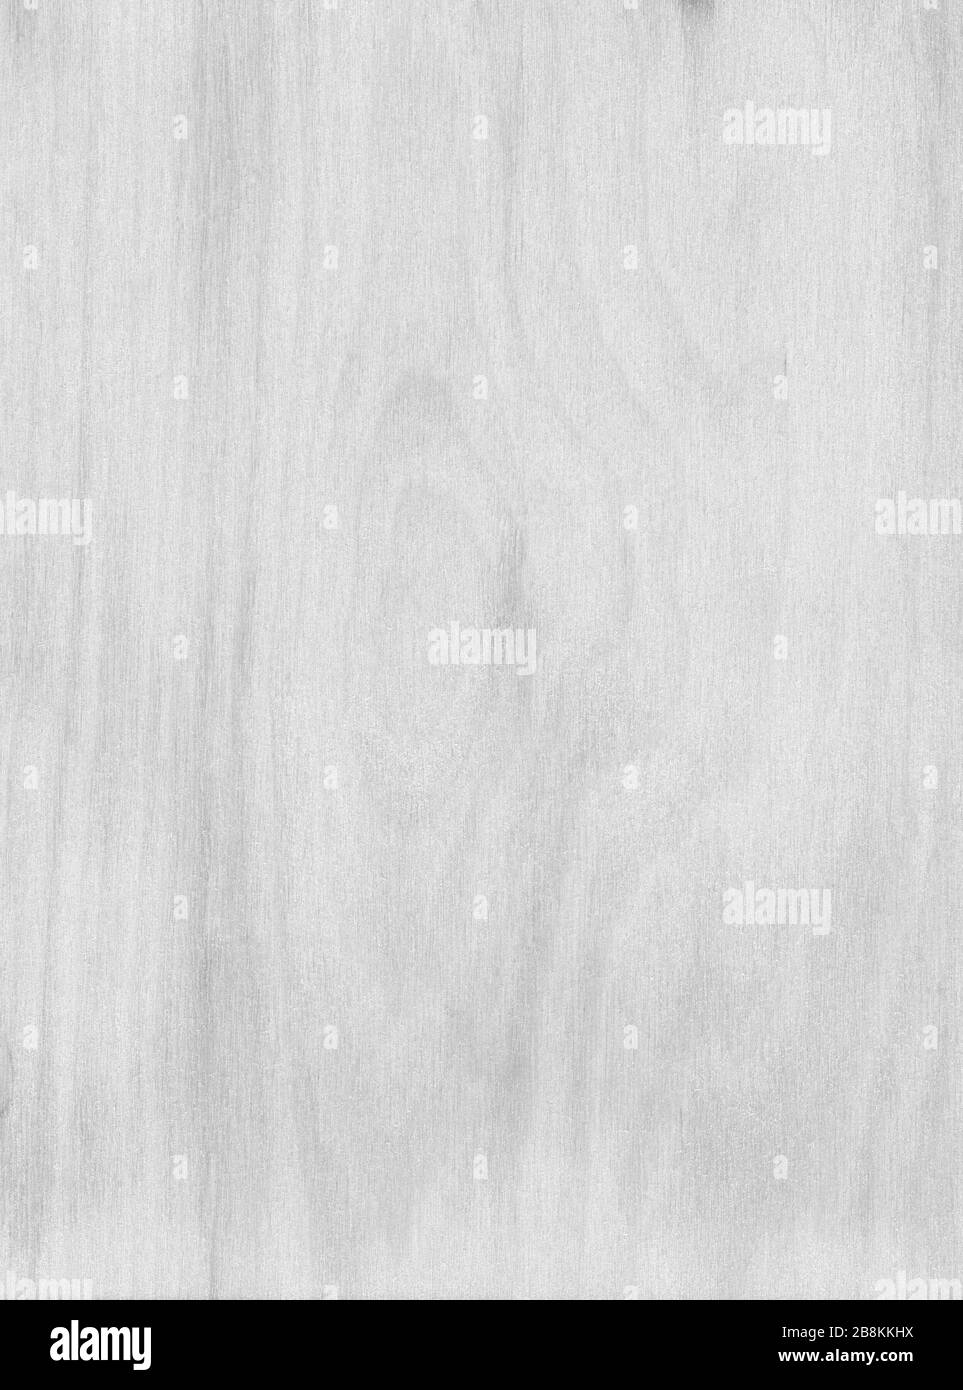 Astratto sfondo in legno monocromatico. Struttura in legno verniciato bianco e nero in stile grunge. Primo piano, vista dall'alto, materiale naturale di colore grigio. Foto Stock